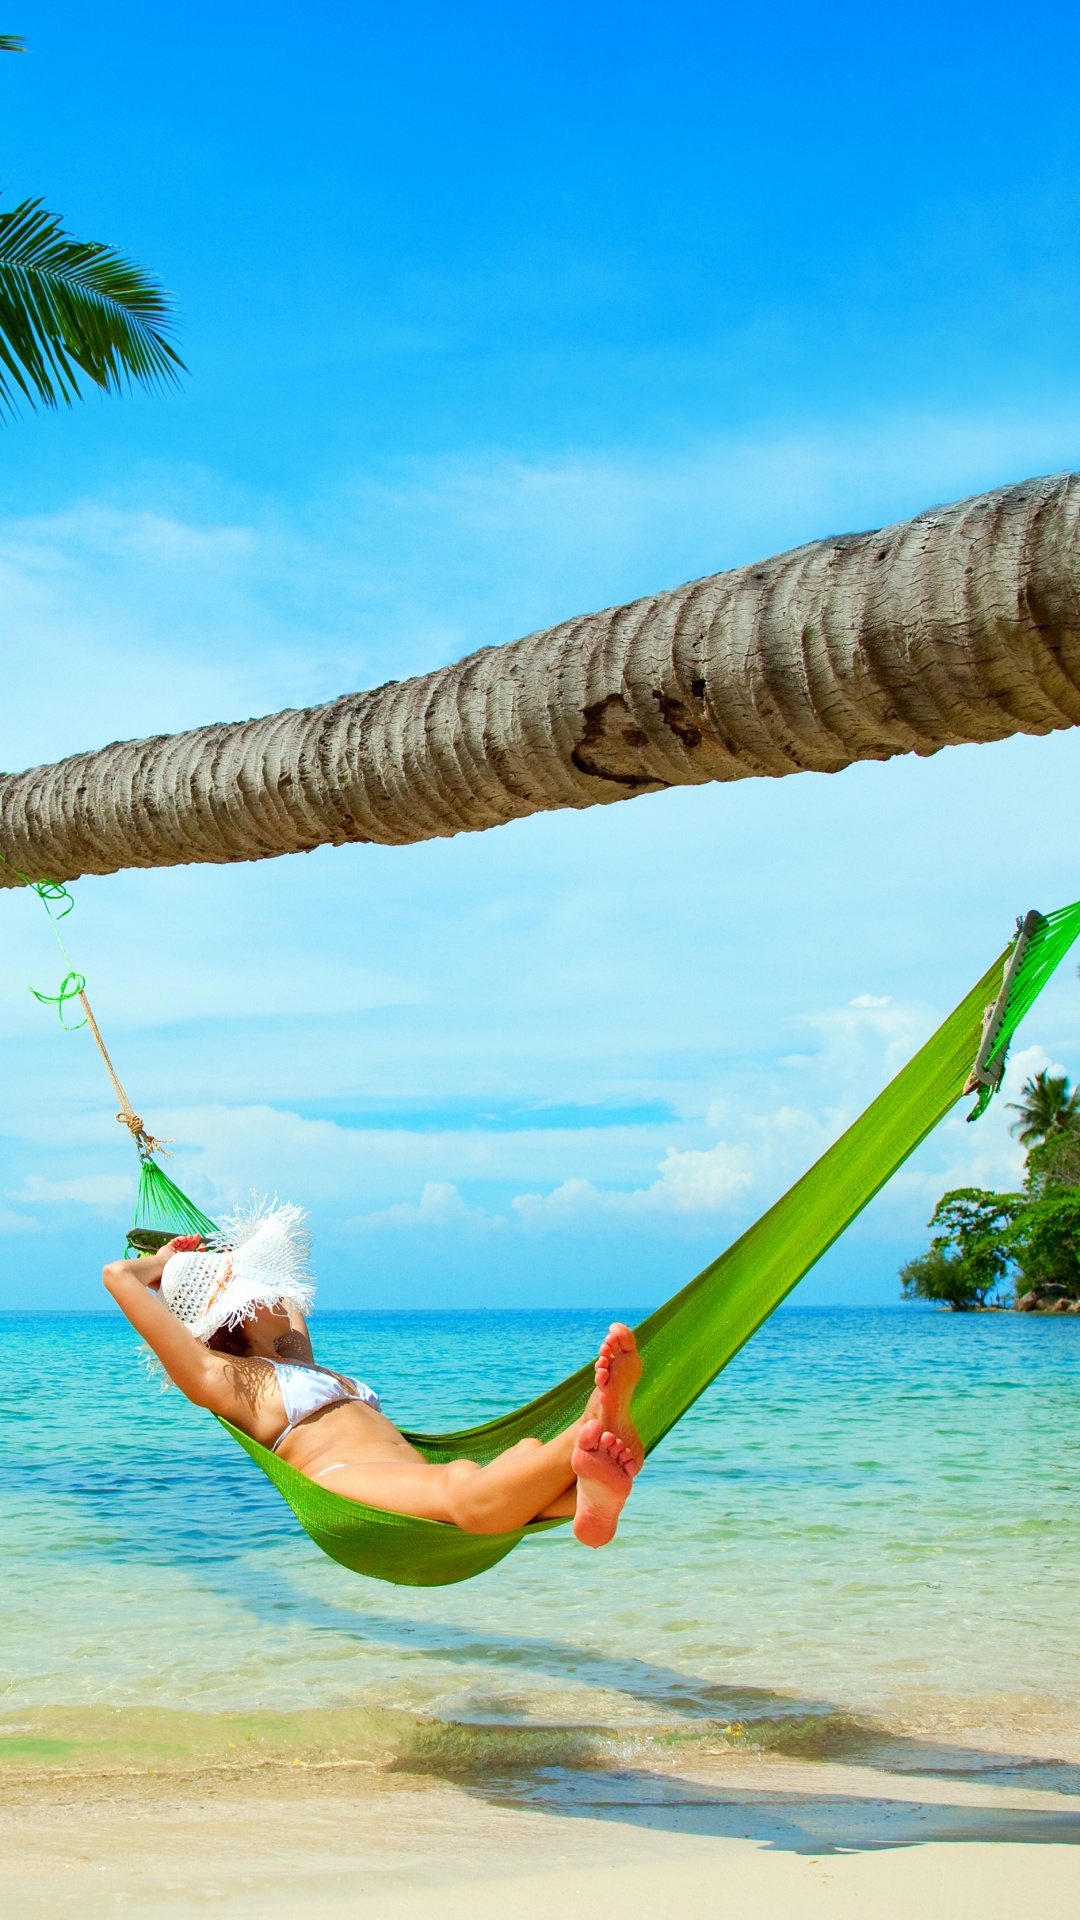 吊床, 大海, 热带地区, 度假, 加勒比 壁纸 1080x1920 允许